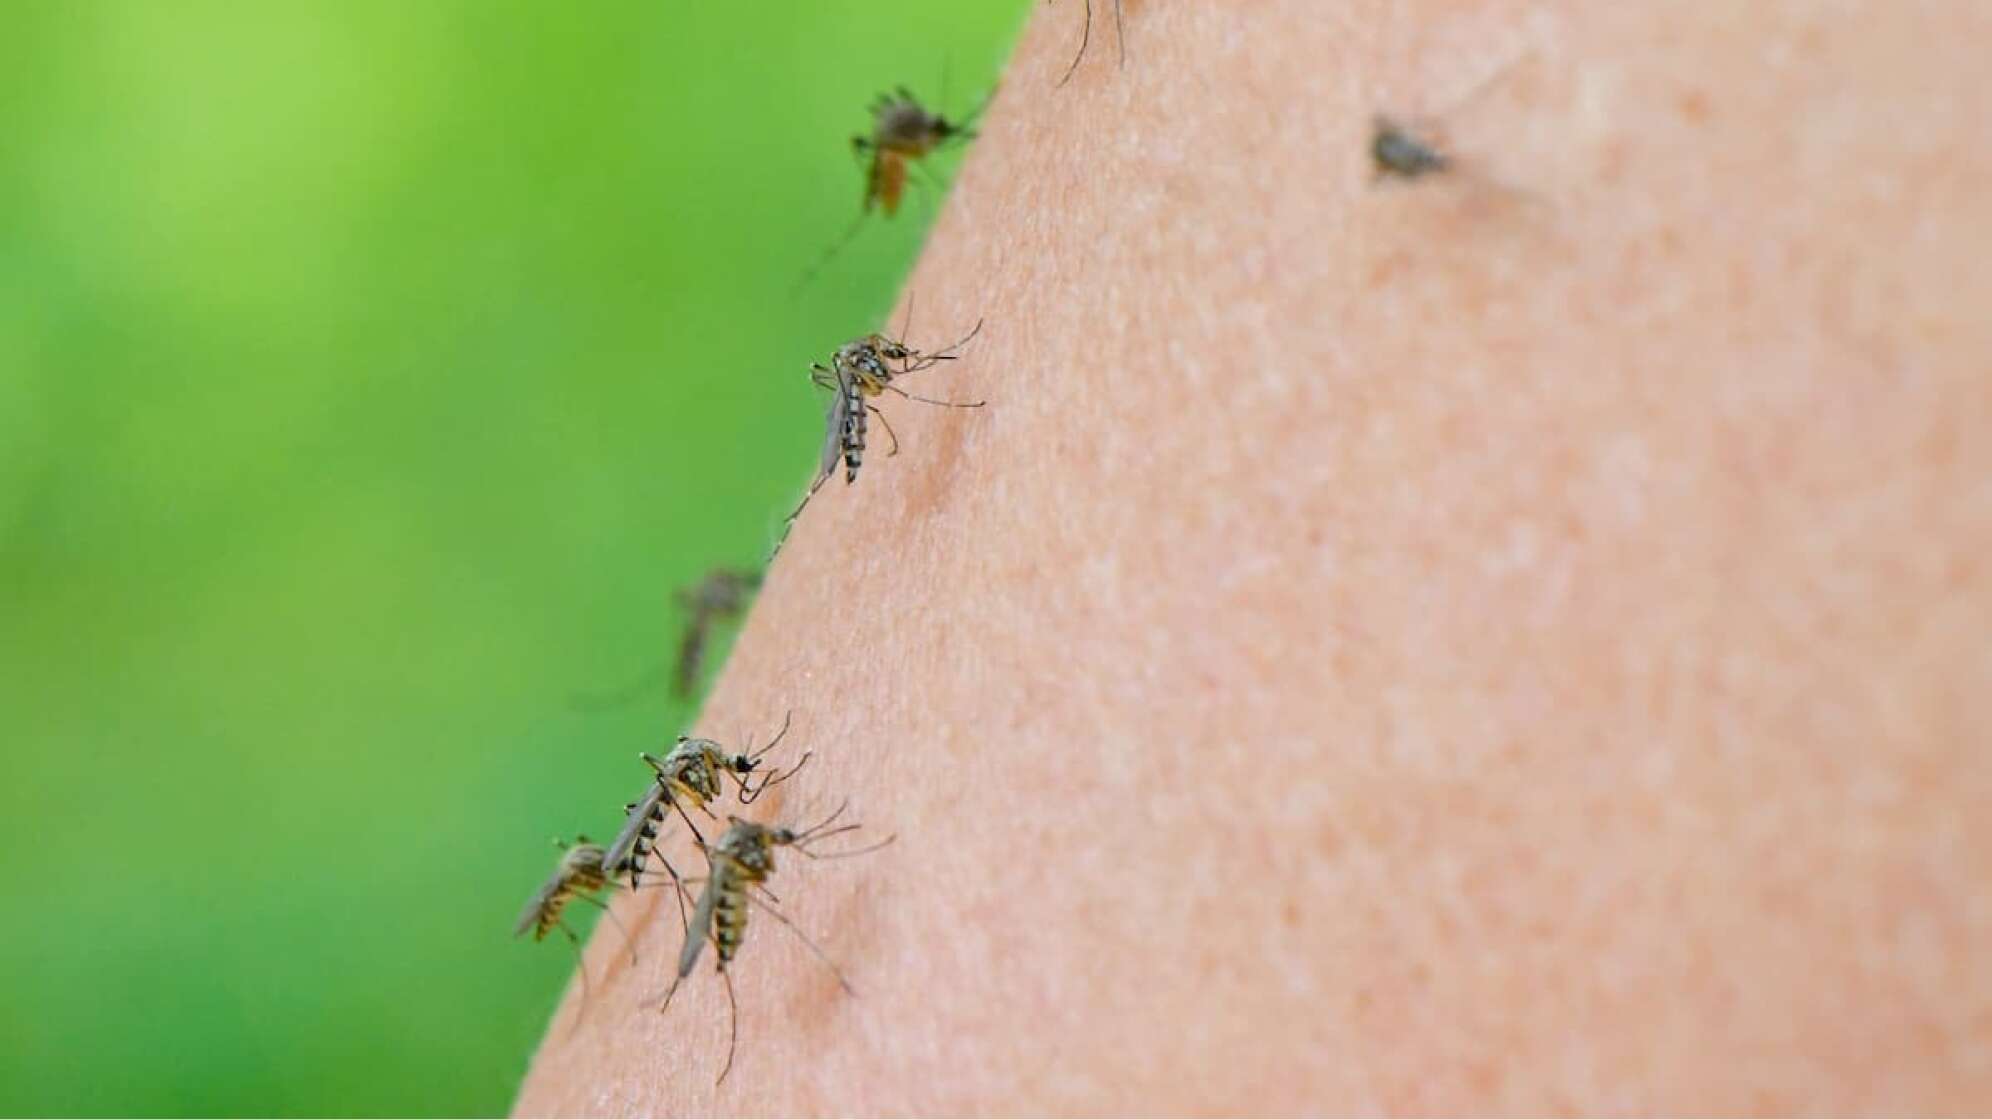 mehrere Mücken auf der Haut